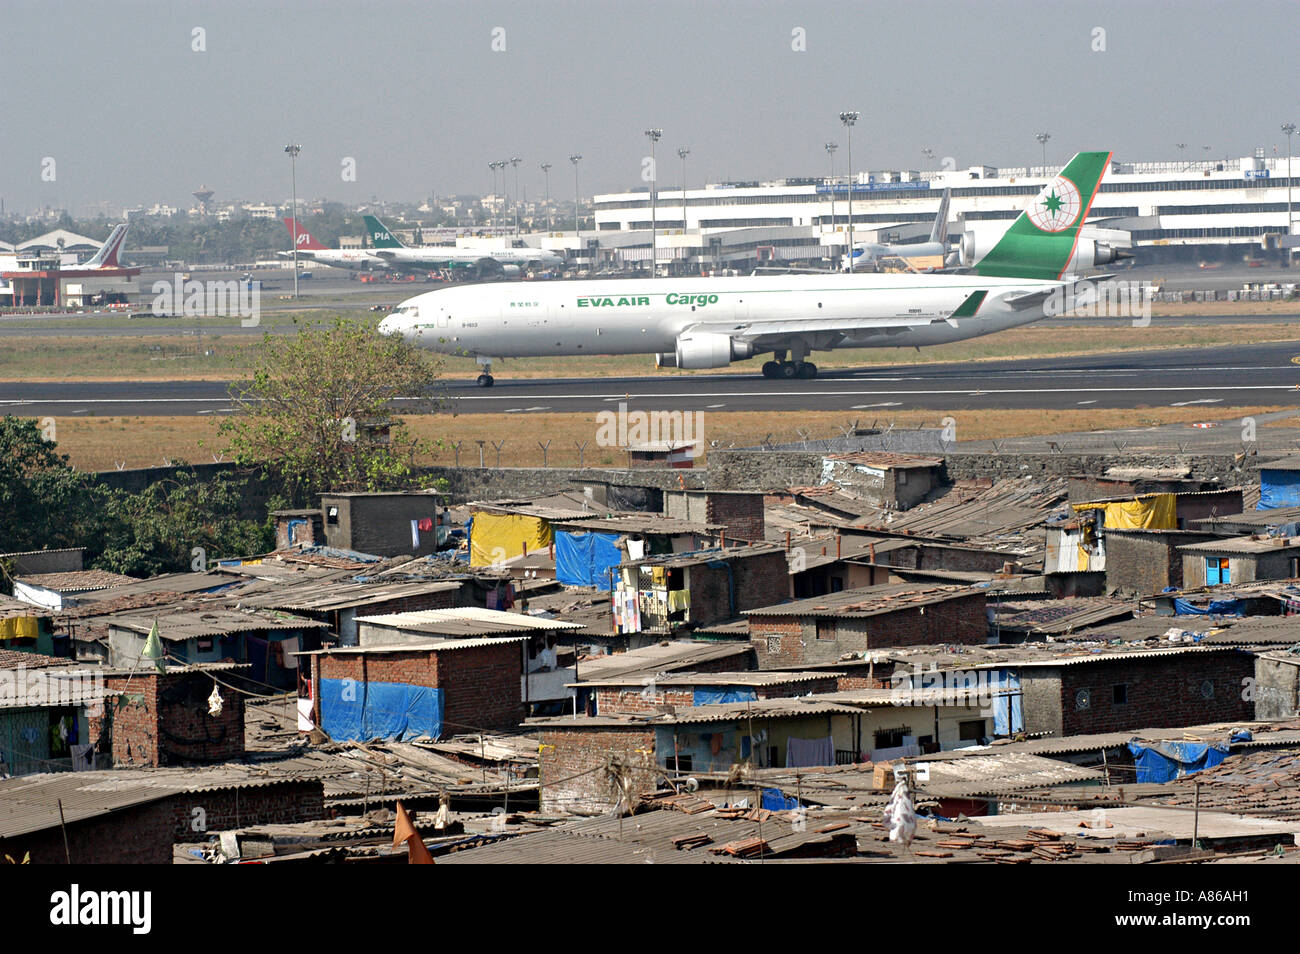 Bombay Flughafen mit Eva Air Cargo-Flugzeug und Slums im Vordergrund, Indien Stockfoto